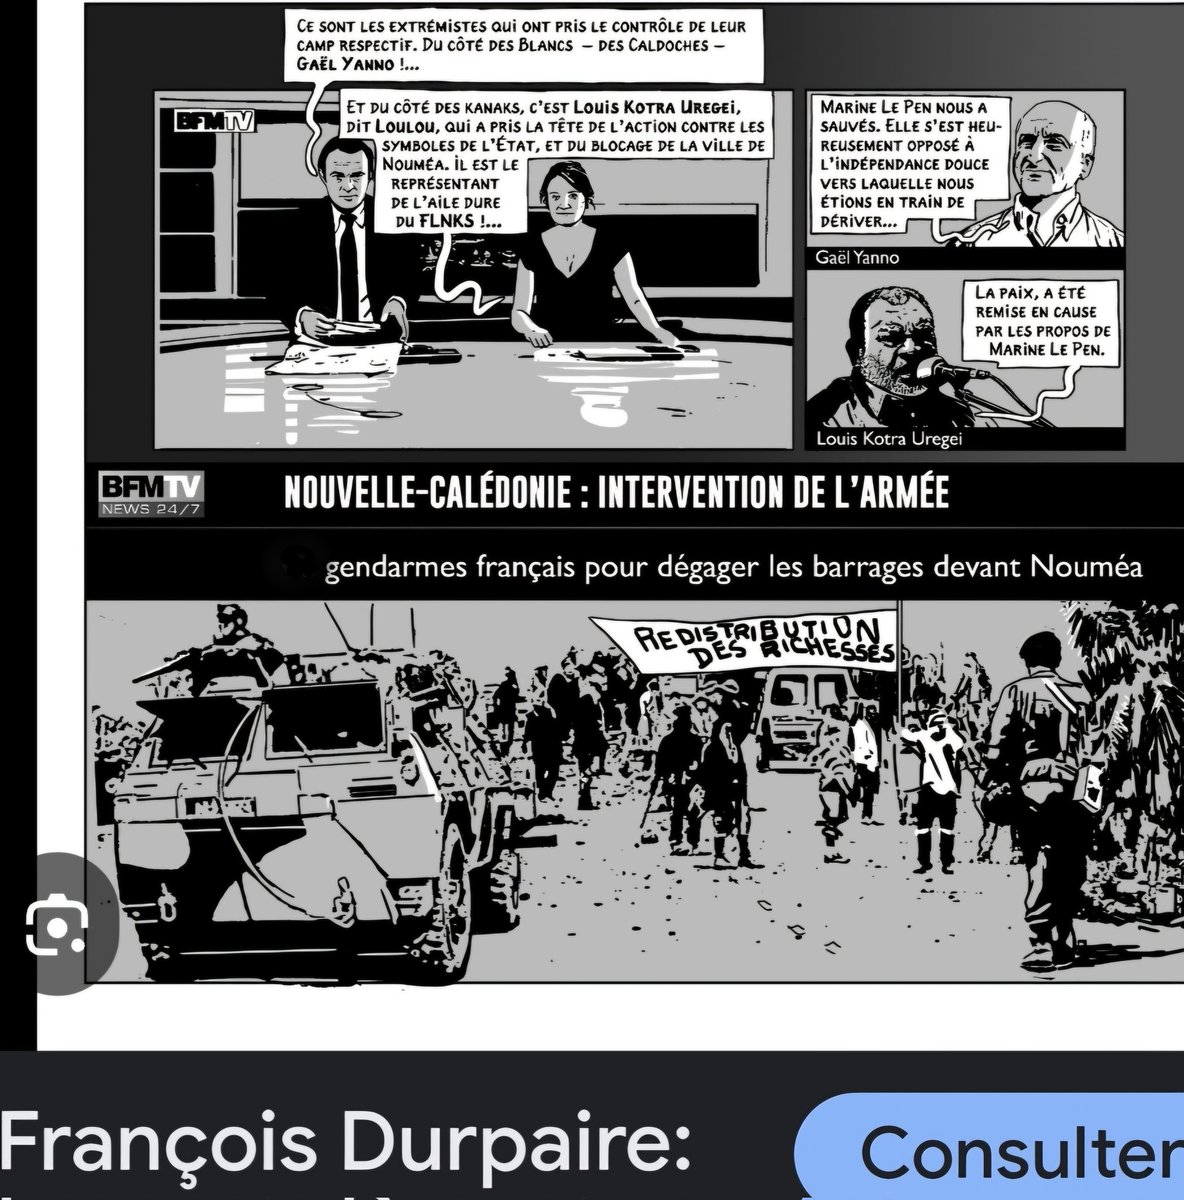 Je rappelle que dans une #BD prémonitoire anti #RN à propos de l'arrivée au pouvoir de Marine Le Pen (La présidente, sur un scénario de #FrançoisDurpaire) les auteurs avaient imaginé la répression violente par l'armée🇫🇷 en #NouvelleCalédonie avec des #chars Leclerc à #Nouméa 😂